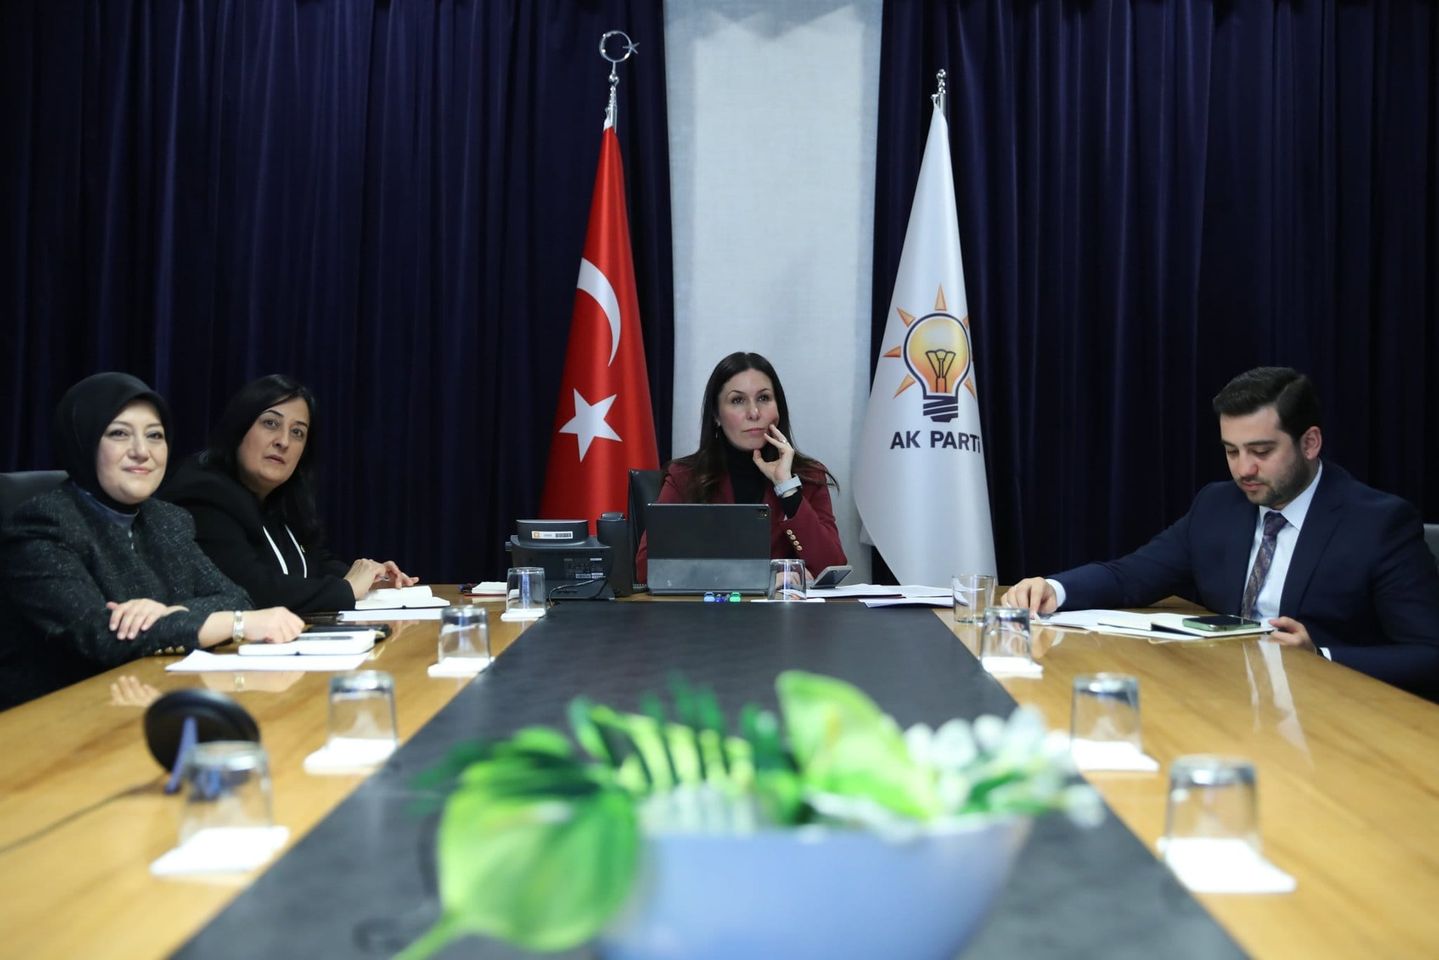 AK Parti Genel Başkan Yardımcısı Çiğdem Karaaslan liderliğinde çevre, şehir ve kültür politikaları üzerine önemli bir toplantı gerçekleştirildi.